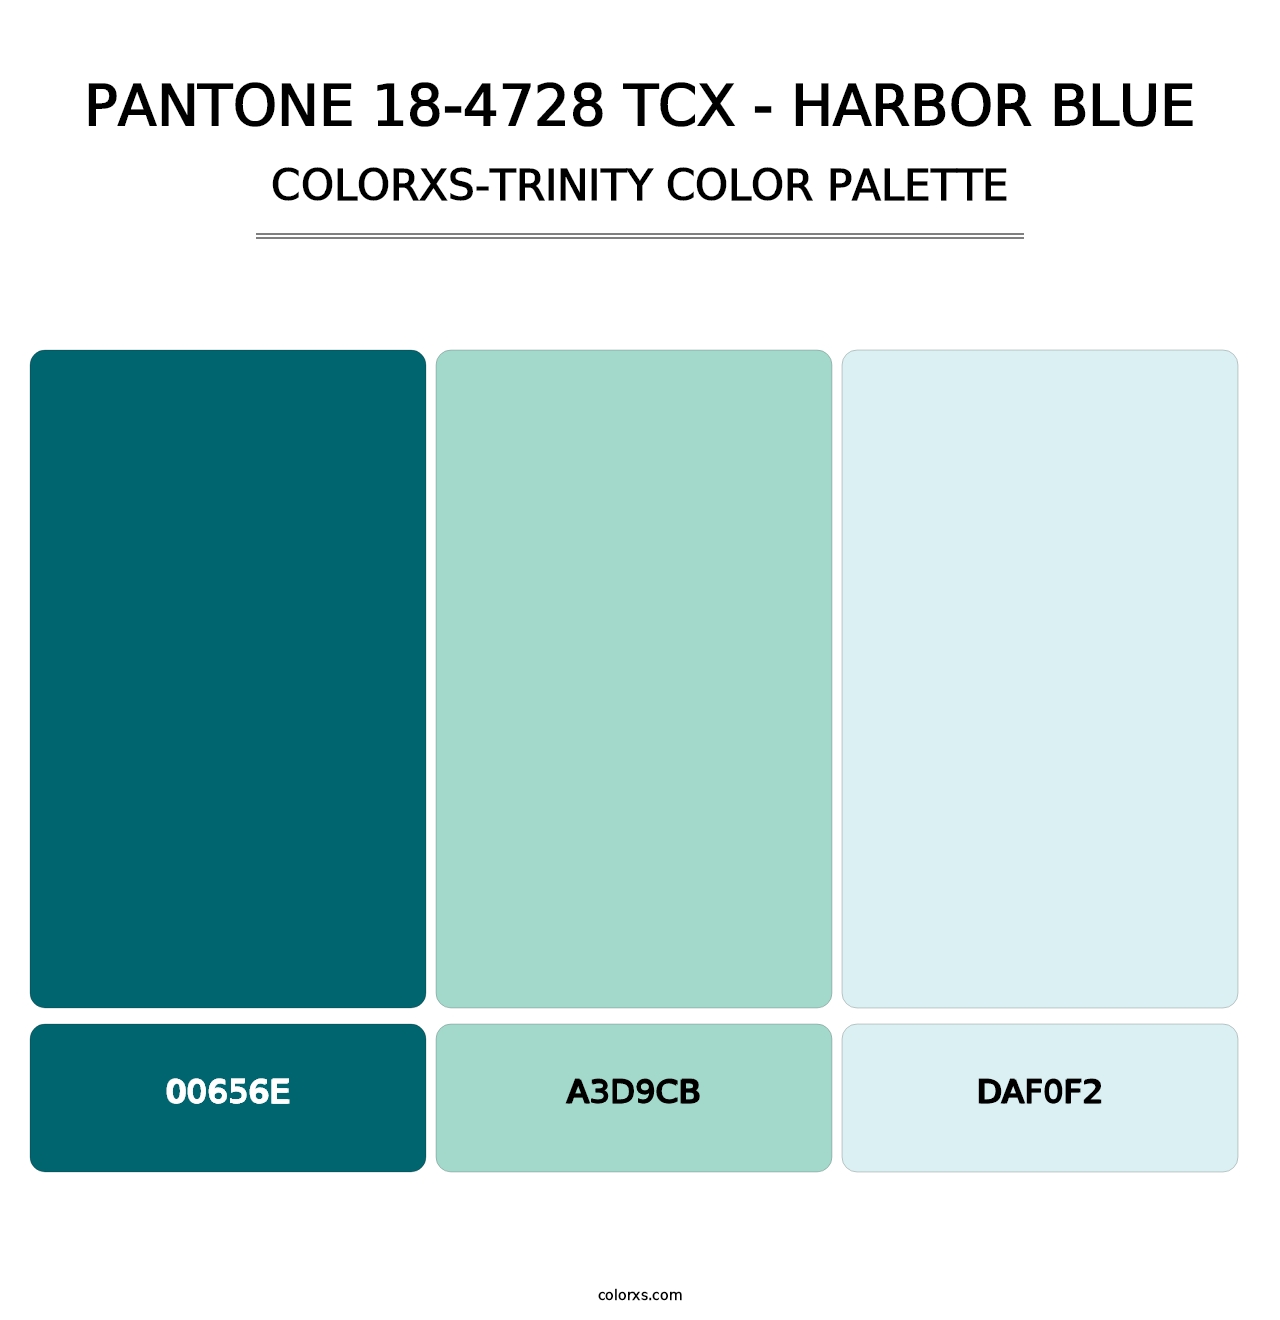 PANTONE 18-4728 TCX - Harbor Blue - Colorxs Trinity Palette